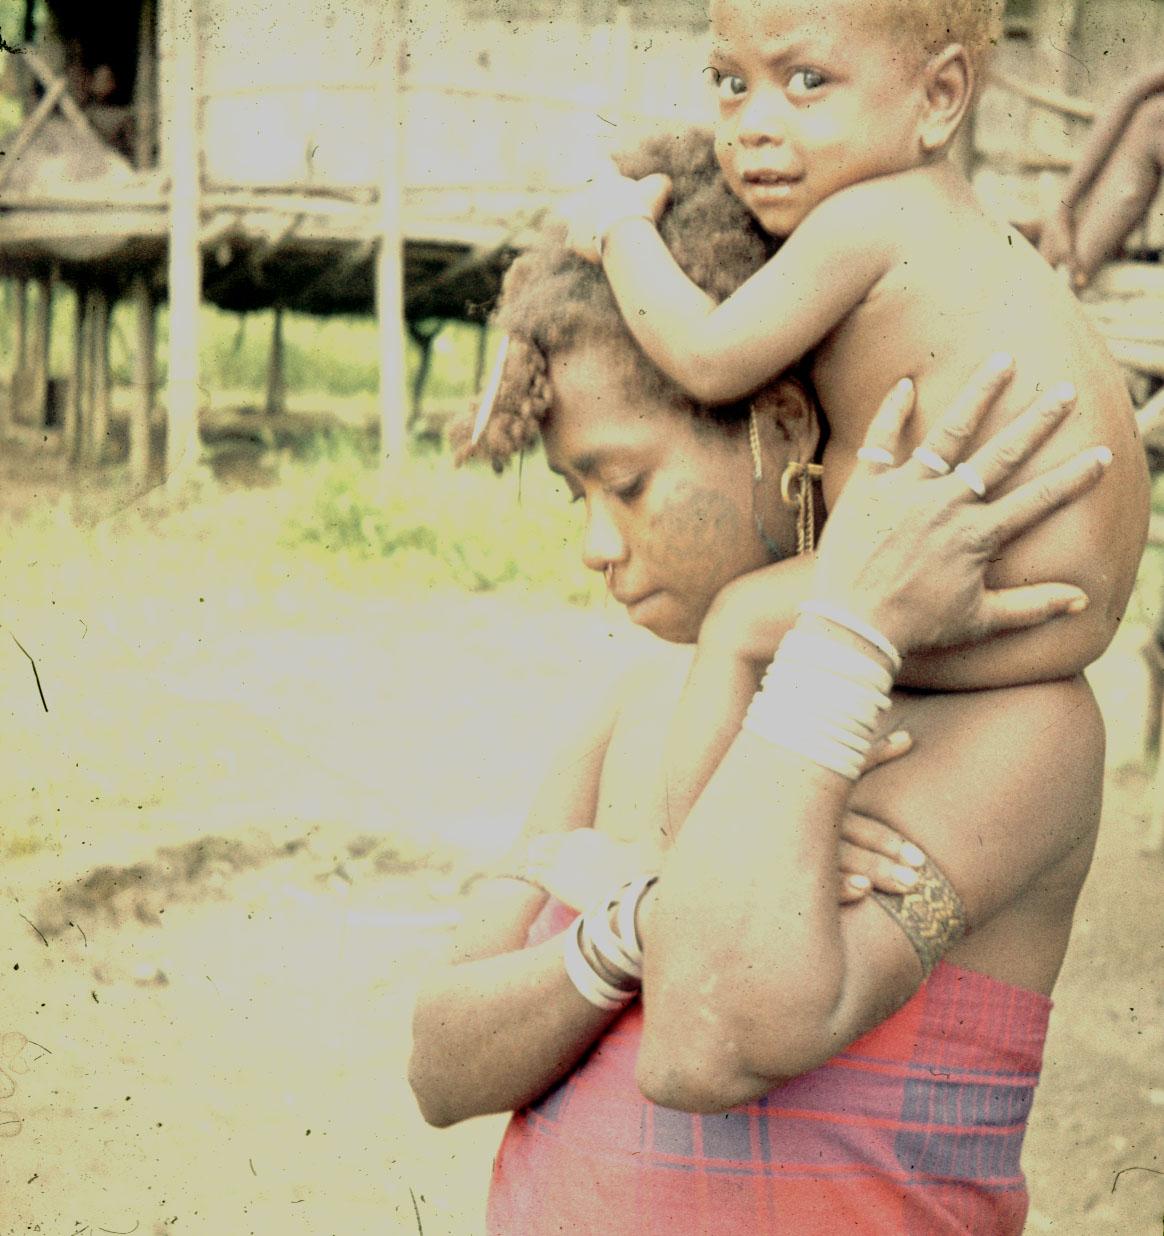 BD/144/426 - 
Vrouw met baby op schouders. Dubbel: zie 482
